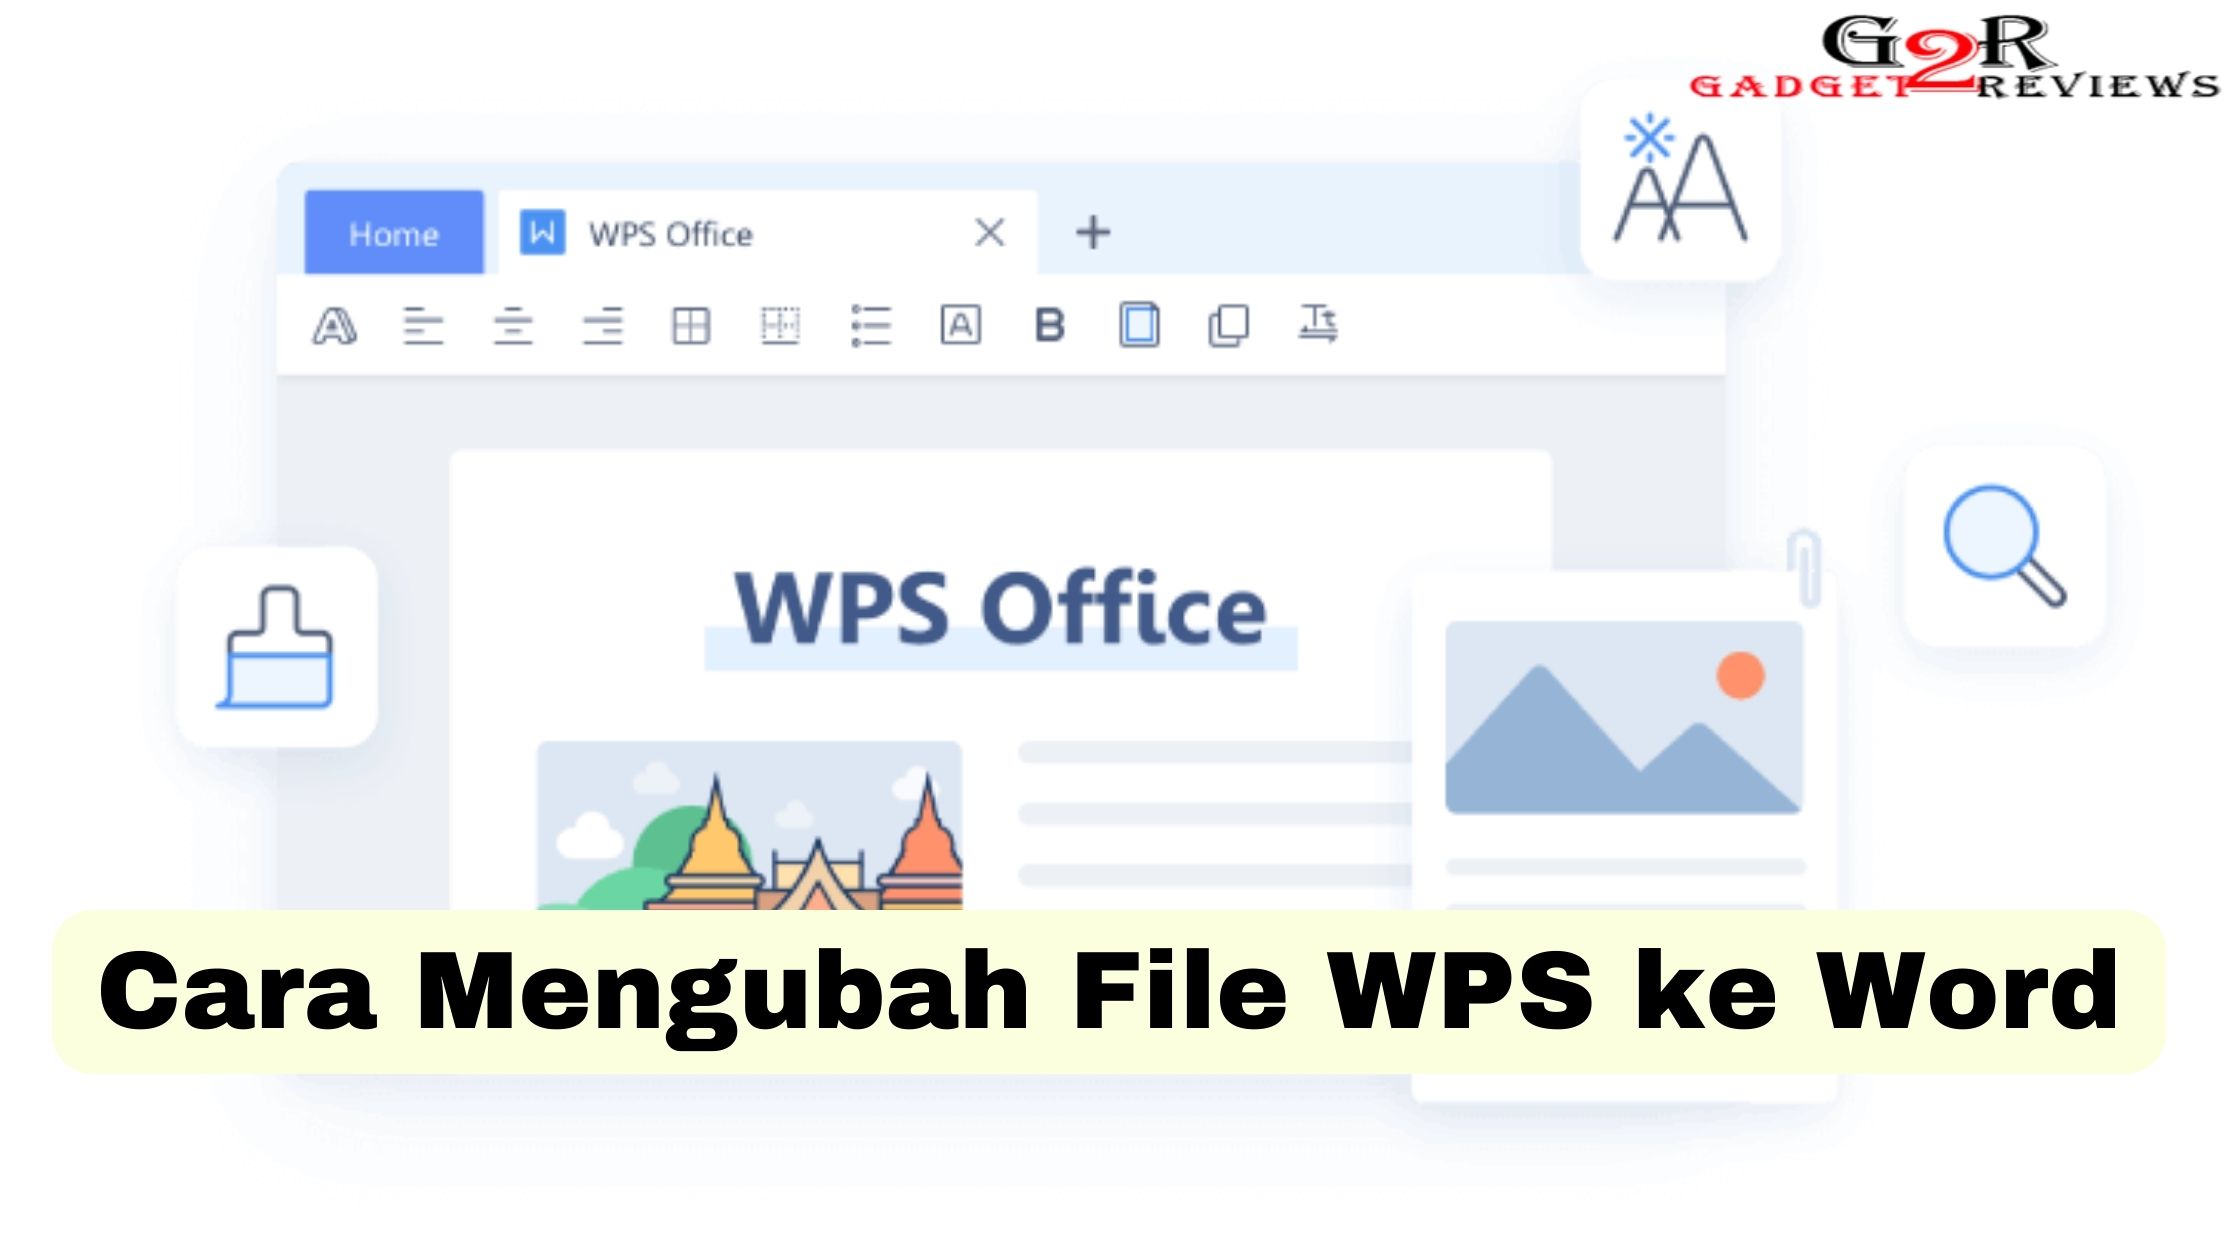 Cara Mengubah File WPS ke Word